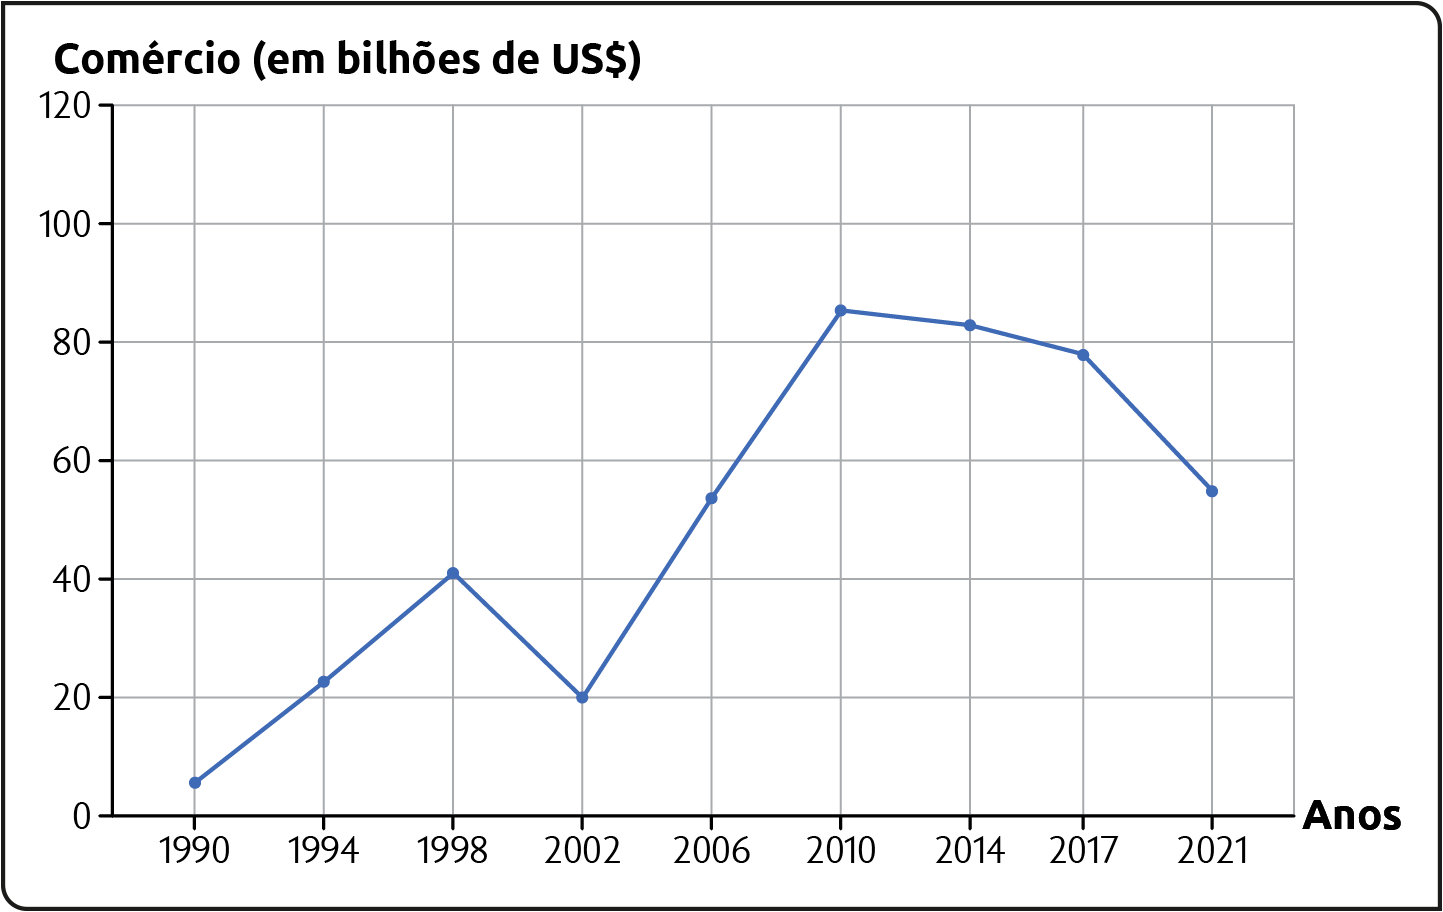 Gráfico A. Evolução do comércio entre países do Mercosul (1990-2021). Comércio (em bilhões de dólares). Em valores aproximados. 1990: entre 0 e 20. 1994: 20. 1998: 40. 2002: 20. 2006: entre 40 e 60. 2010: entre 80 e 100. 2014: 80. 2017: 80. 2021: entre 40 e 60.